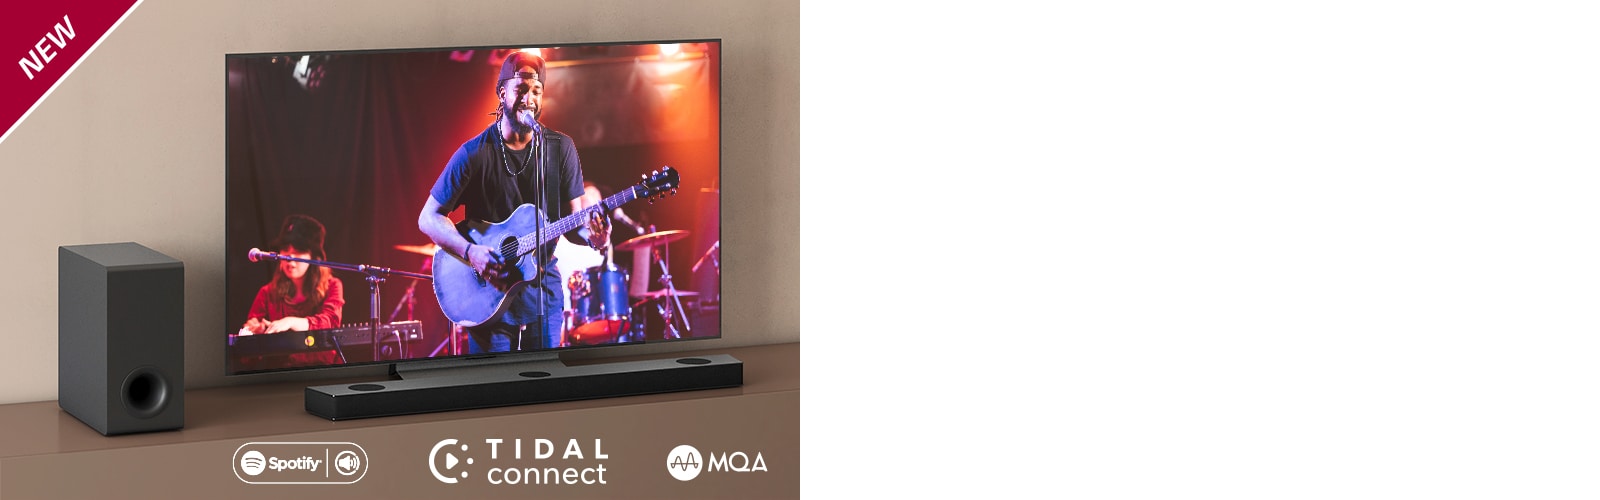 LG TV je postavljen na braon polici, LG Sound Bar S95QR je postavljen ispred televizora. Niskotonac je postavljen sa leve strane televizora. Na televizoru se prikazuje scena sa koncerta. Oznaka NEW prikazana je u gornjem levom uglu.